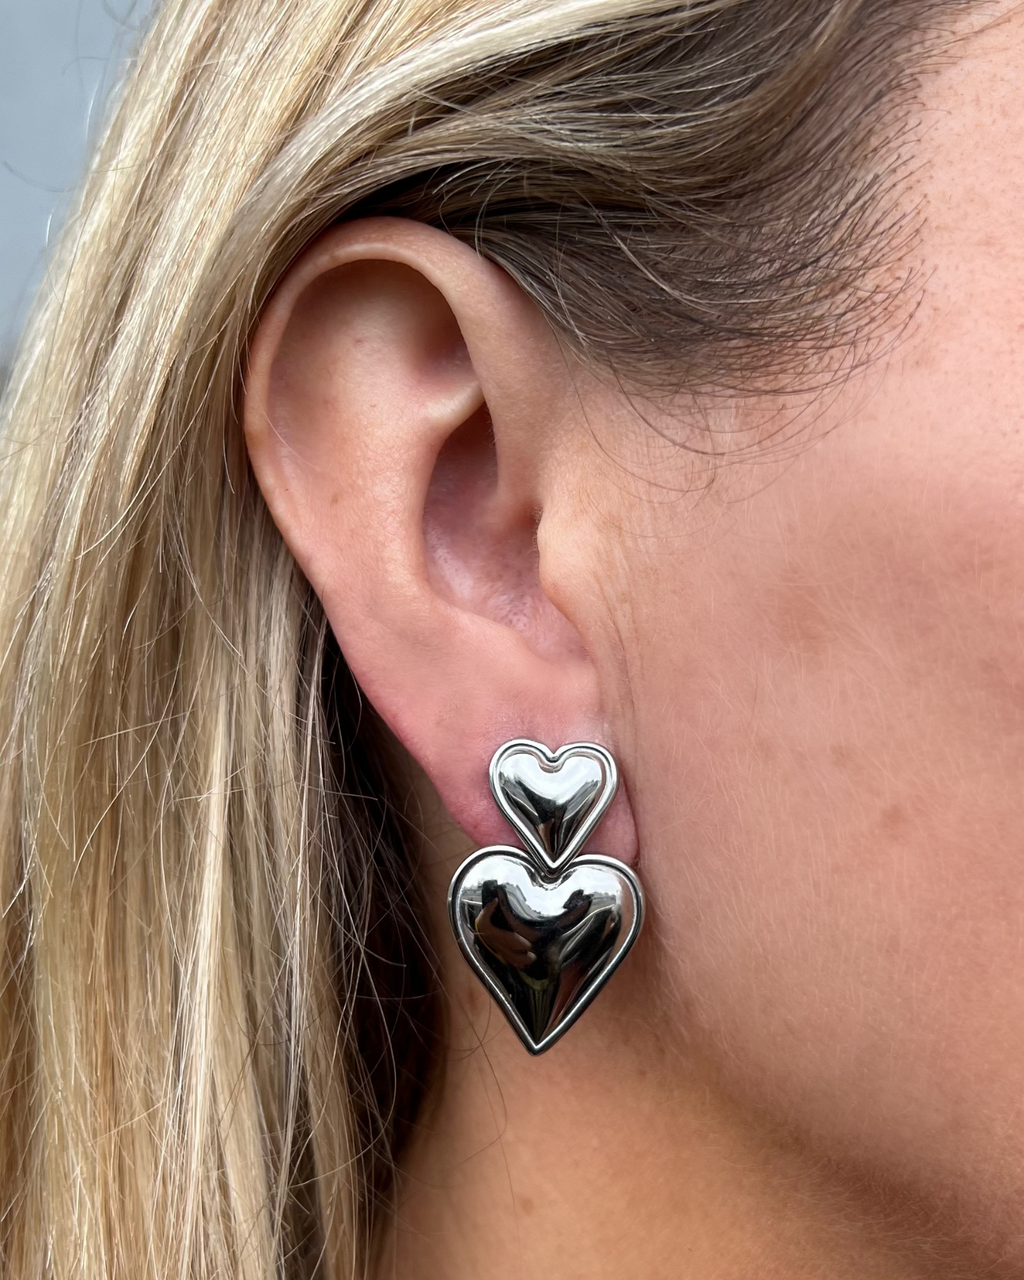 Izoa Tana Heart Stud Earrings Silver